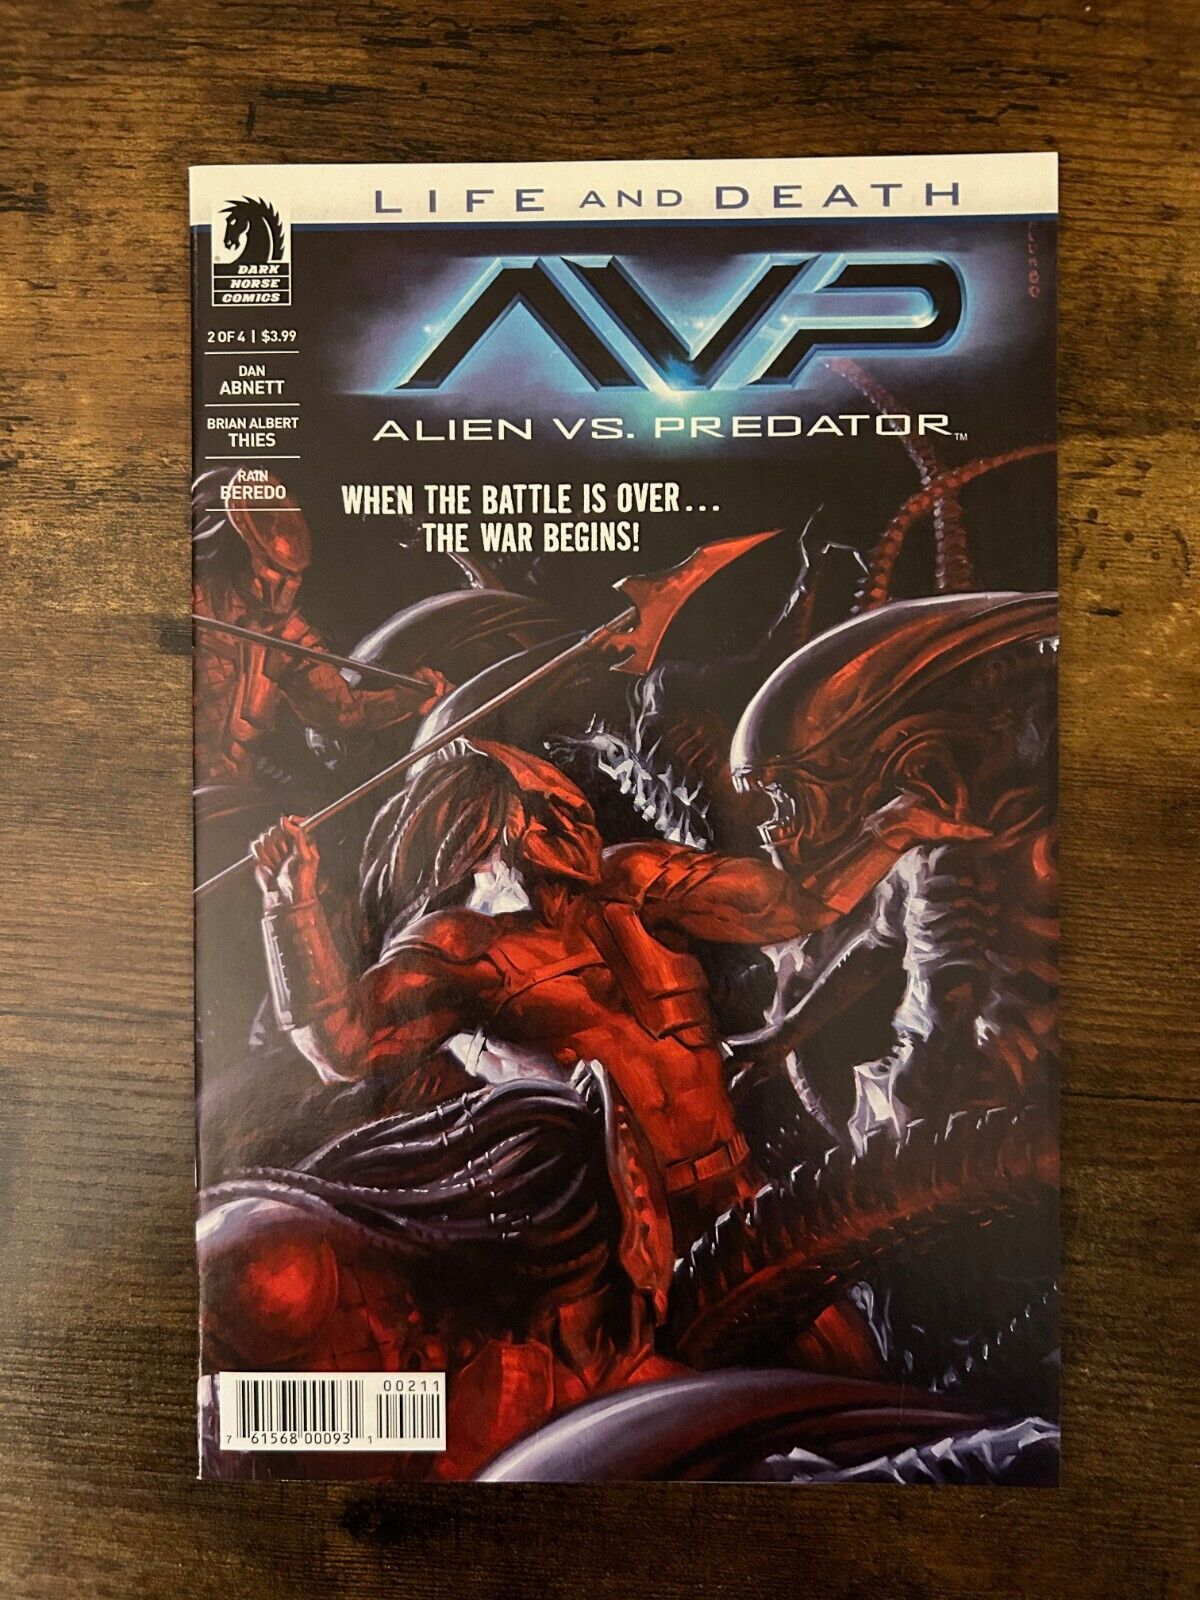 Alien Vs. Predator Life And Death #2 Dark Horse Comics (Jan, 2017) 9.4 NM